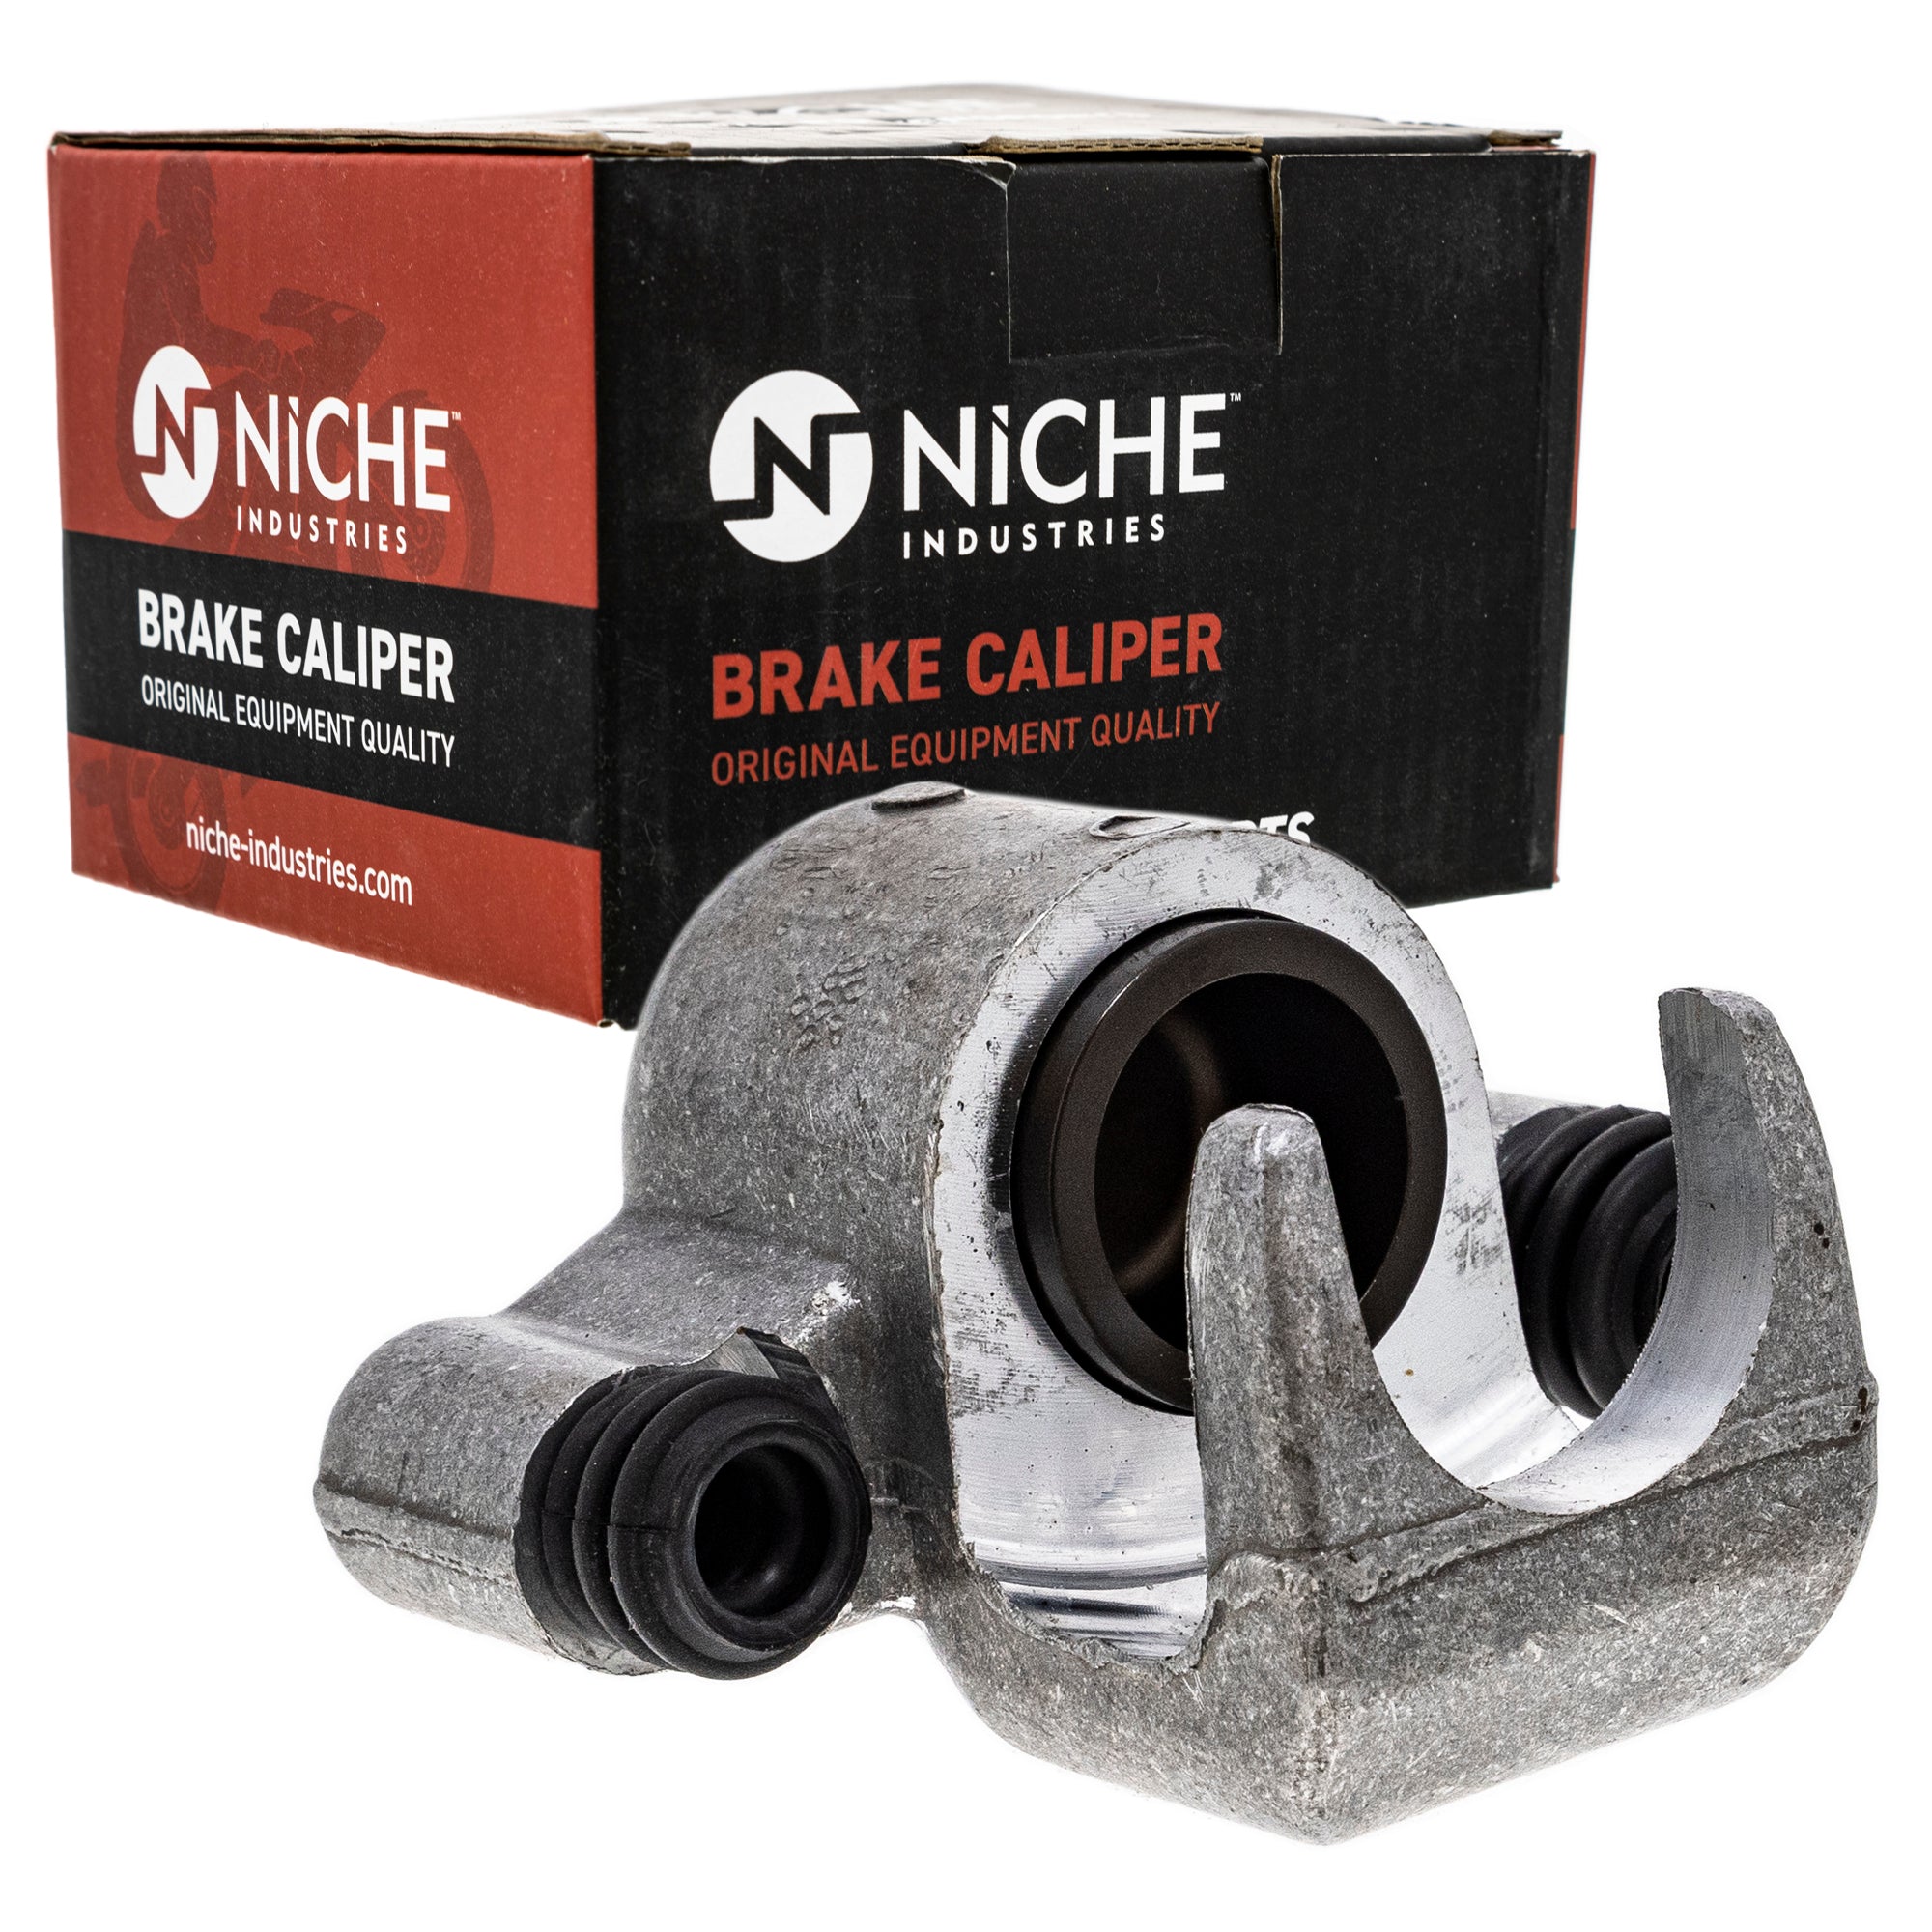 NICHE MK1001031 Brake Caliper Kit